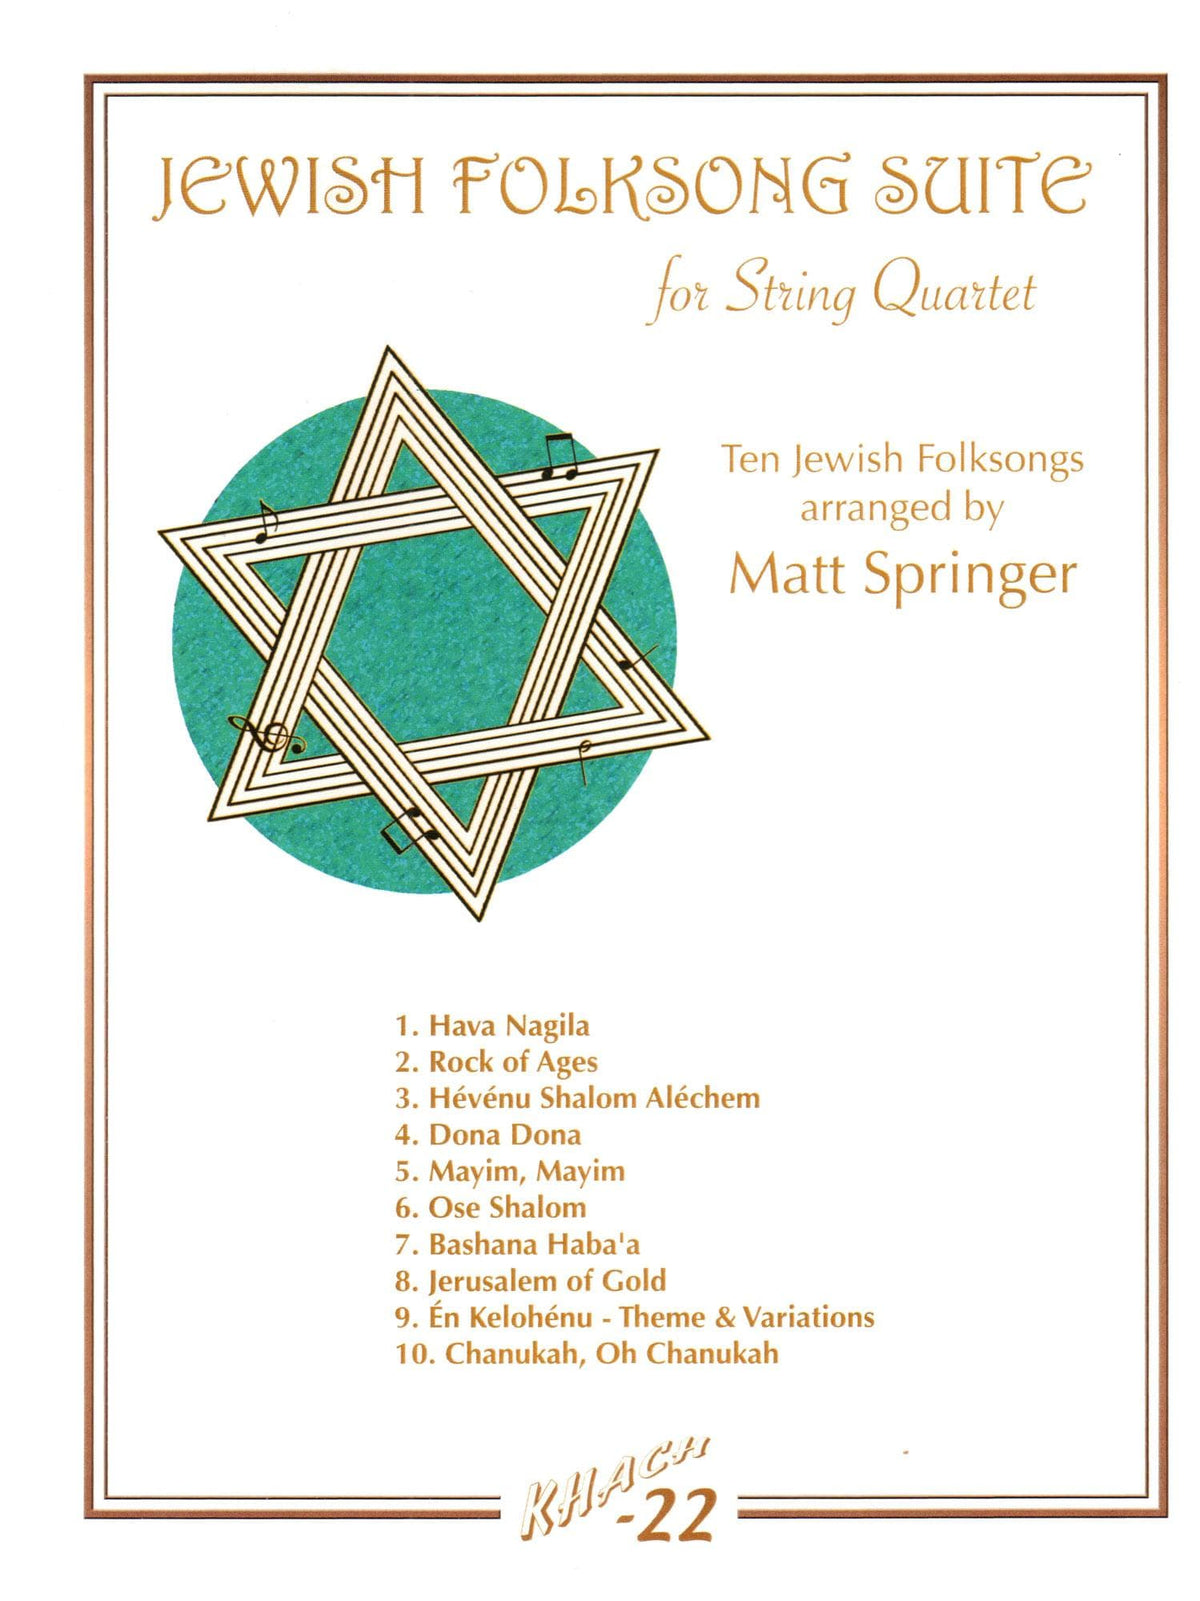 Springer, Matt - Jewish Folksong Suite for String Quartet - Khach-22 Digital Download